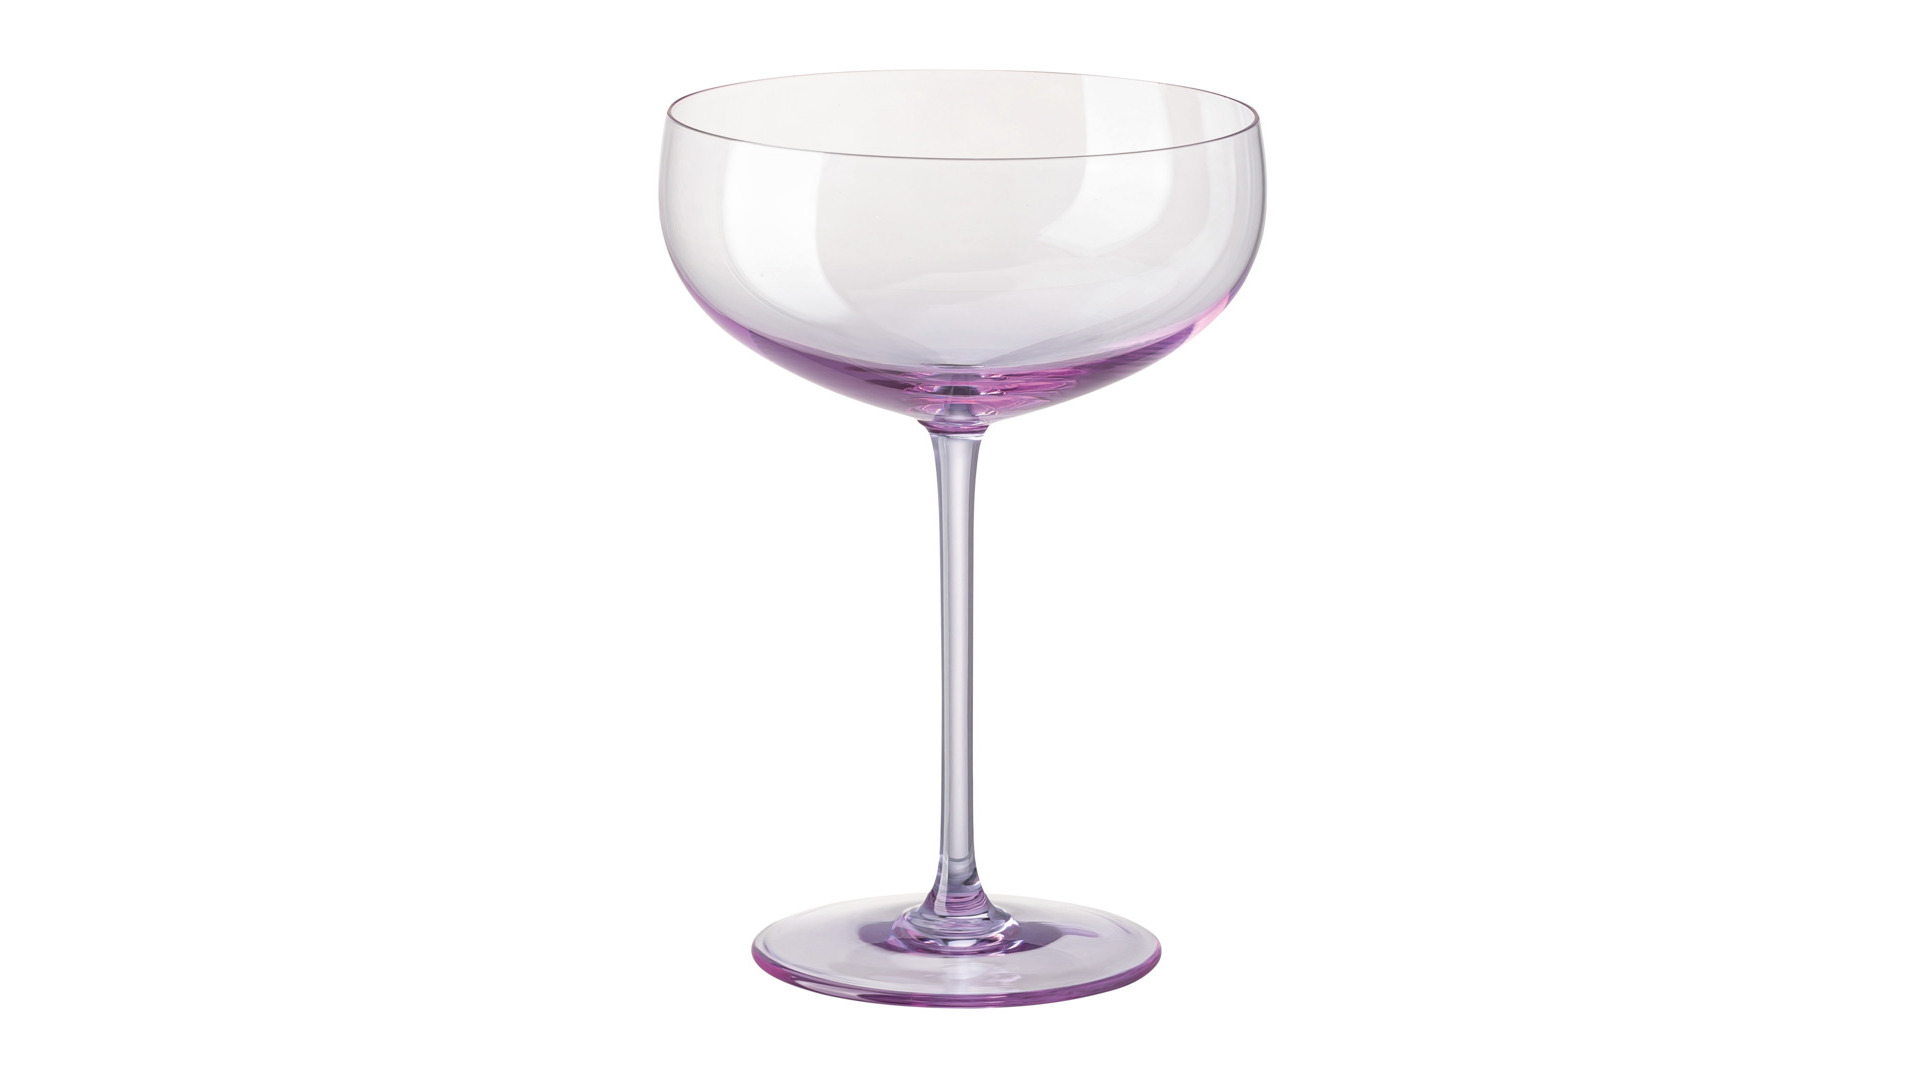 Набор креманок для шампанского Rosenthal Турандот 220 мл, стекло, розовый, 6 шт